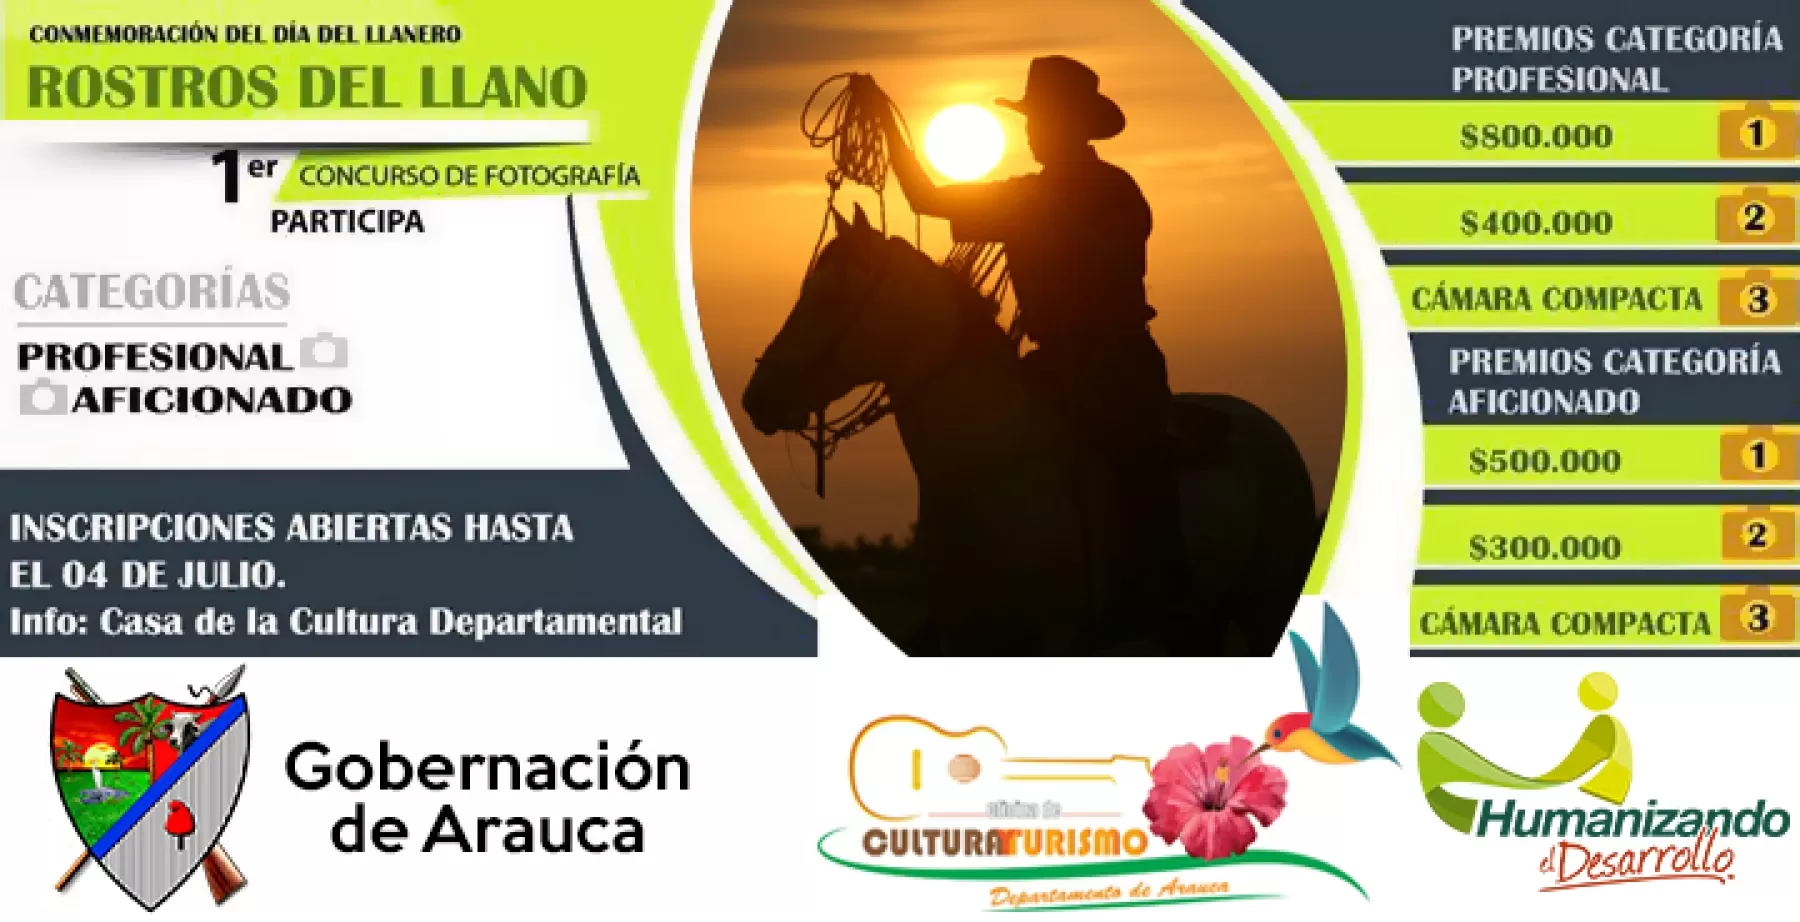 "Rostros del llano", primer concurso de fotografía en conmemoración del día departamental del llanero en Arauca.